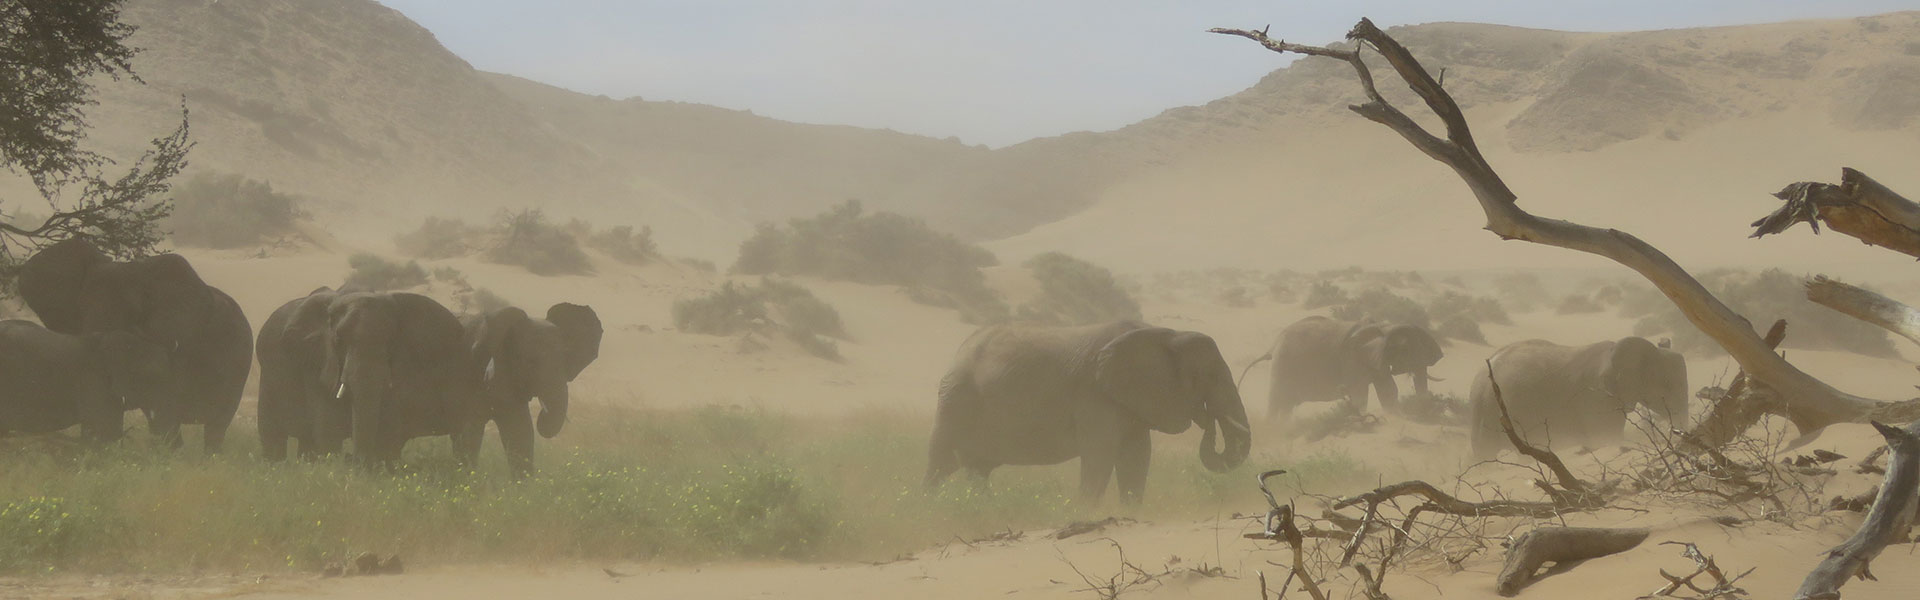 elephants du desert.jpg